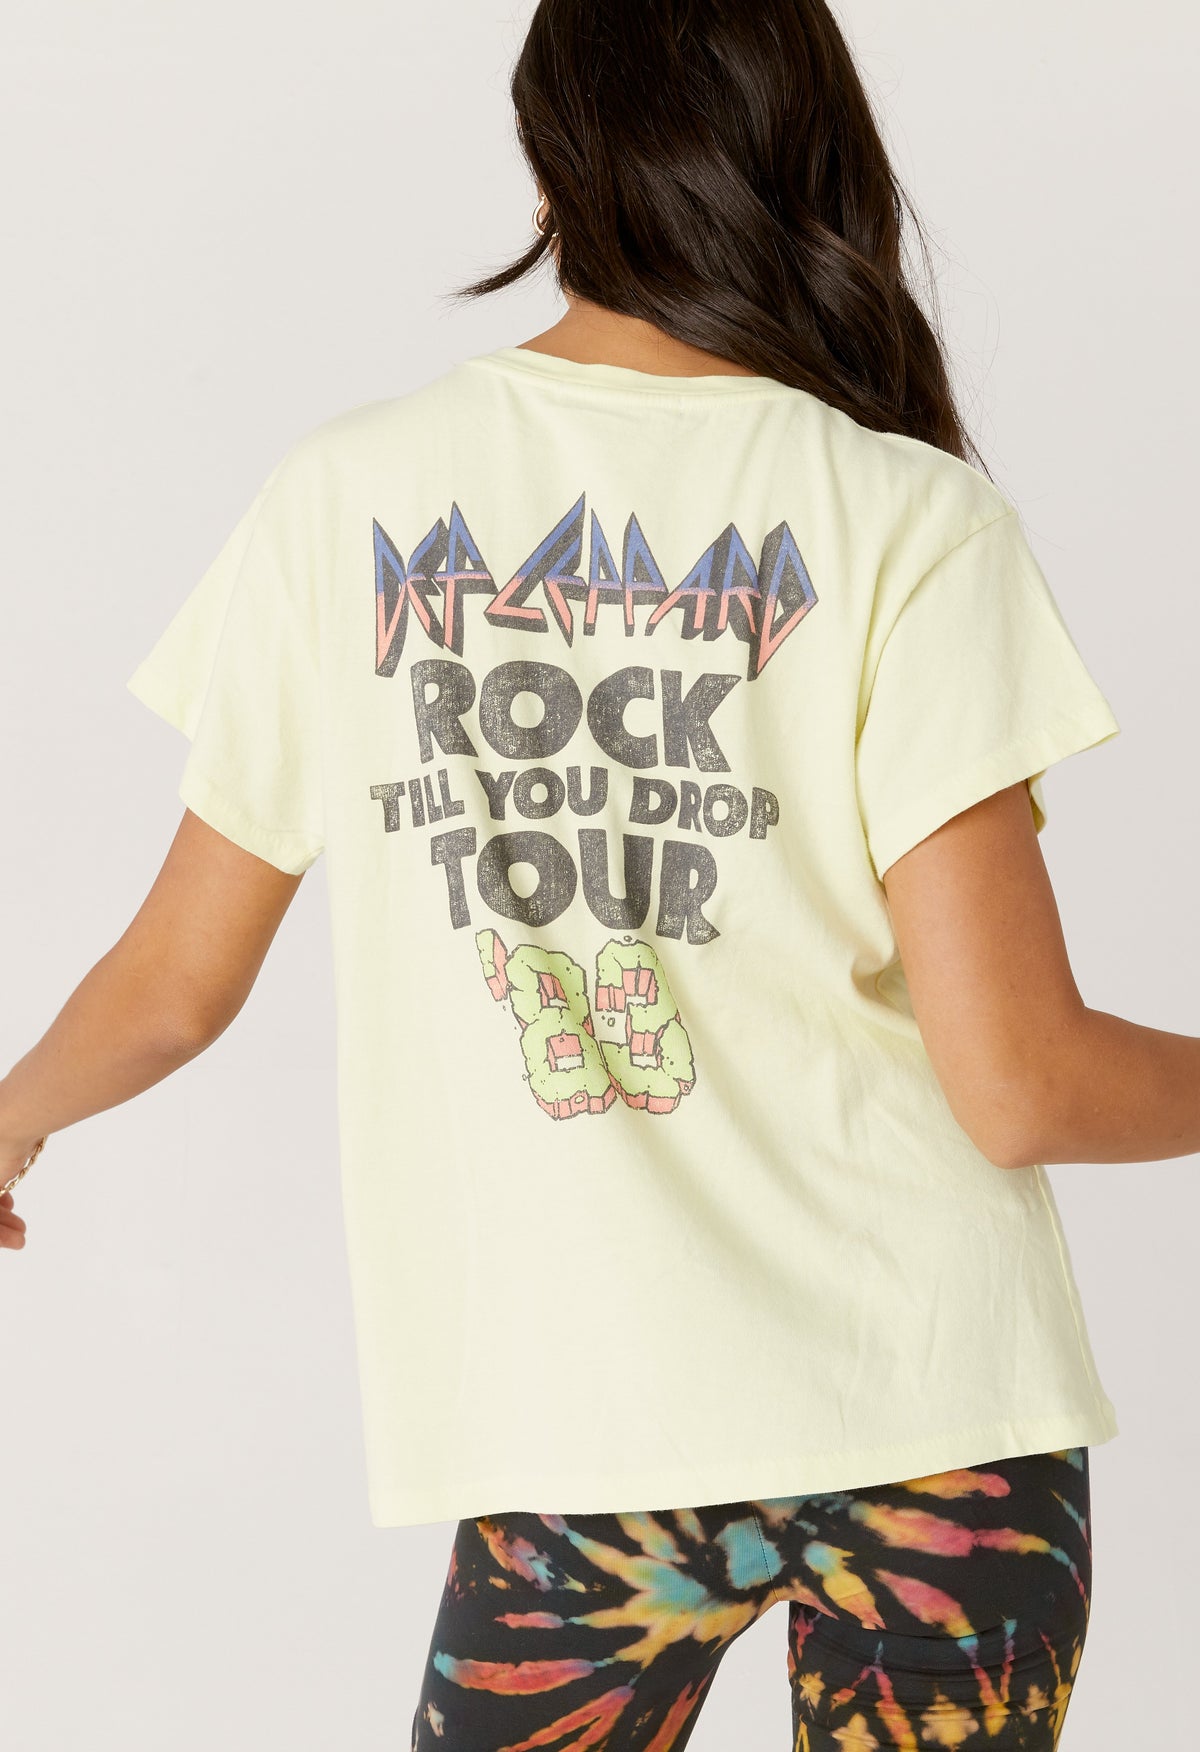 Daydreamer Def Leppard Rock Till You Drop Tour T Shirt